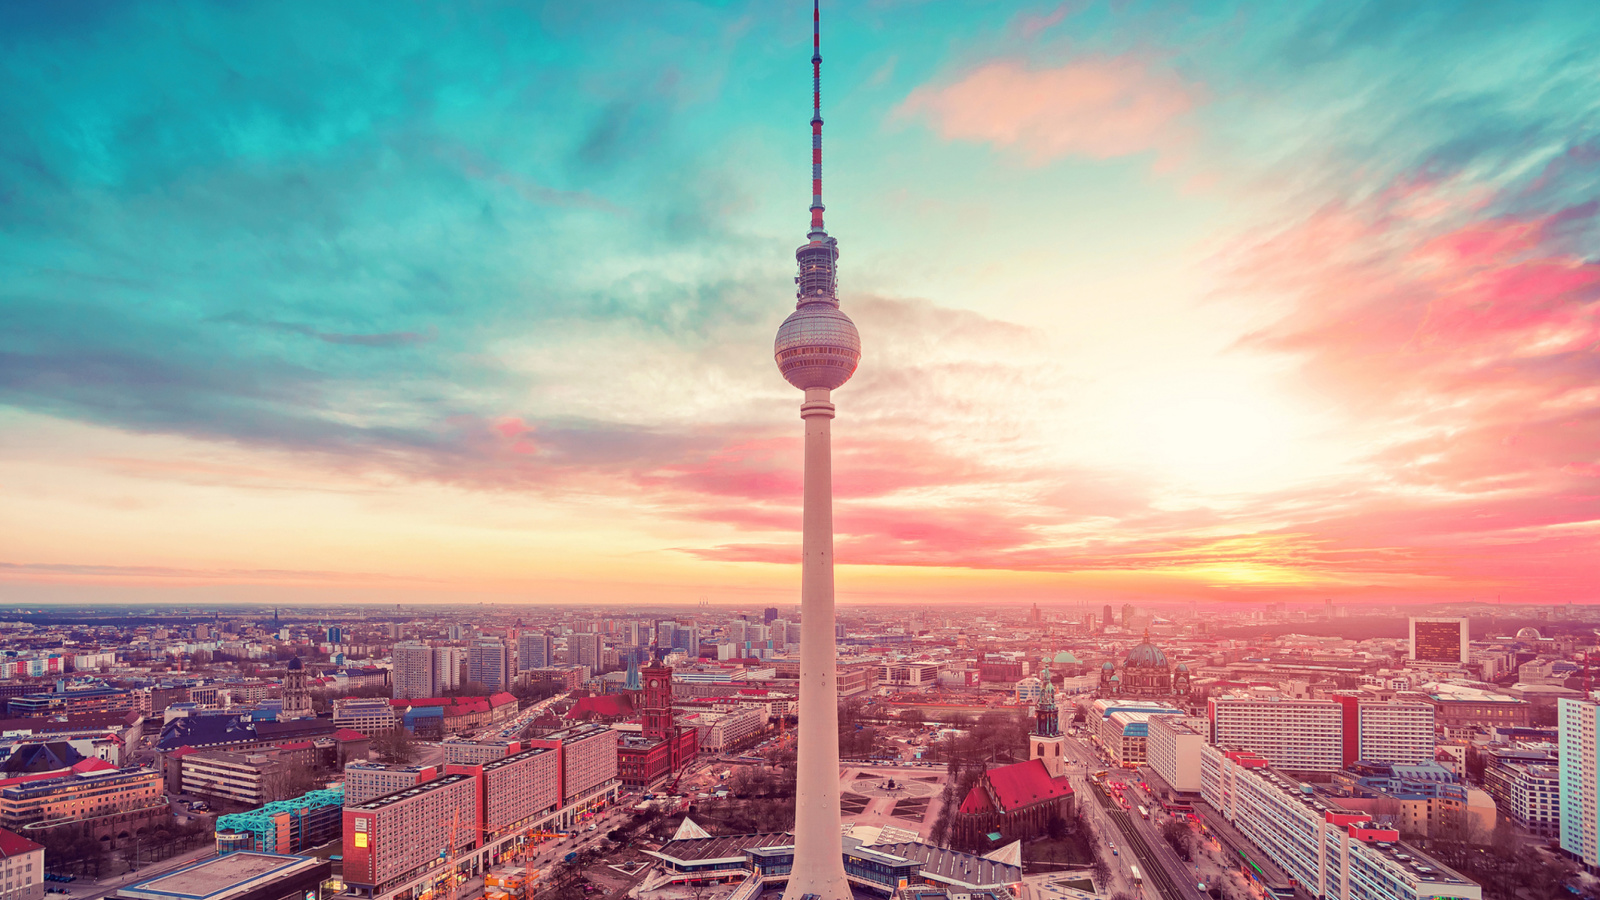 Das Berlin TV Tower Berliner Fernsehturm Wallpaper 1600x900